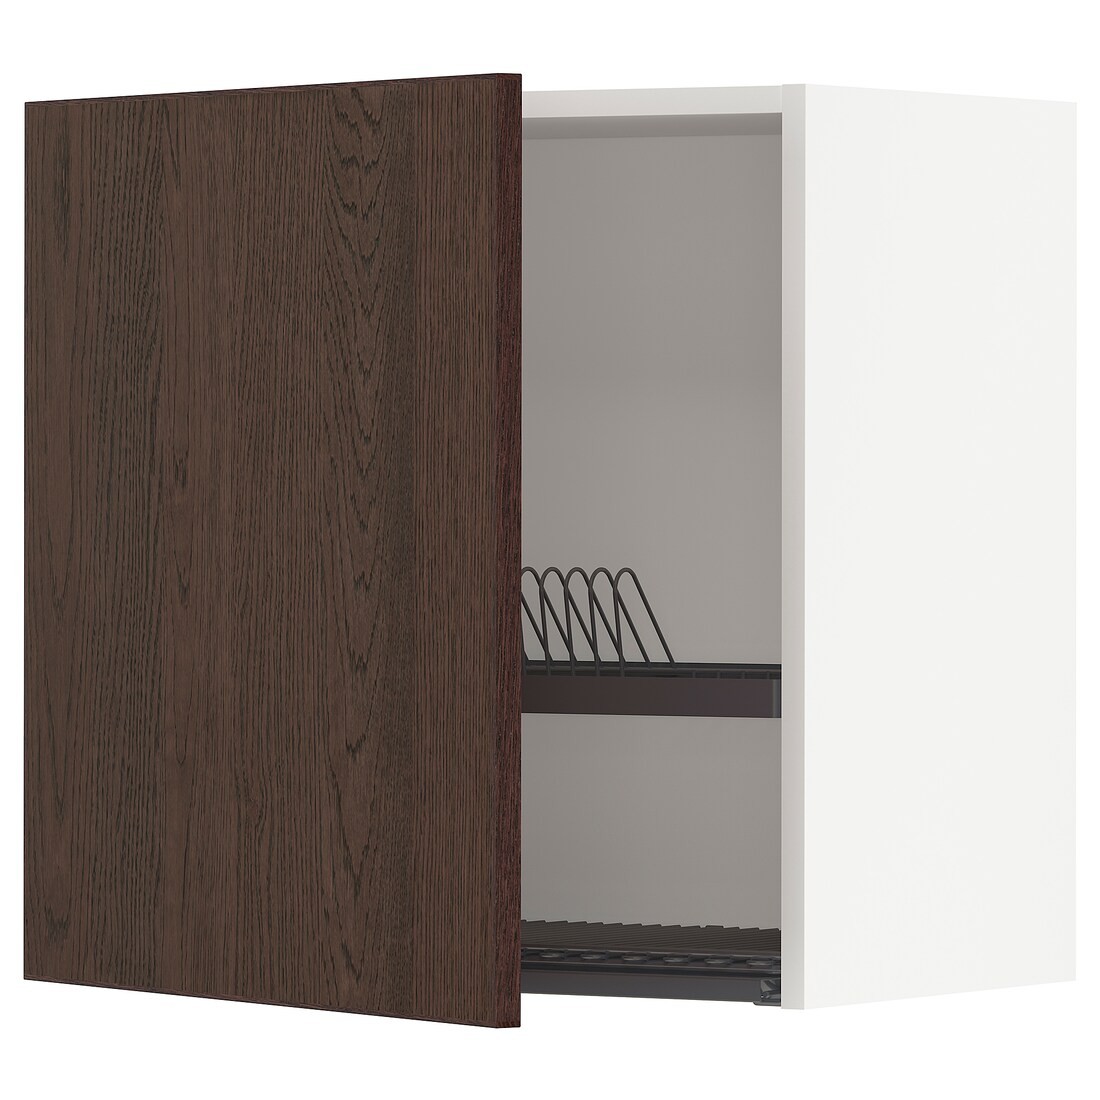 METOD МЕТОД Навесной шкаф с сушилкой, белый / Sinarp коричневый, 60x60 см